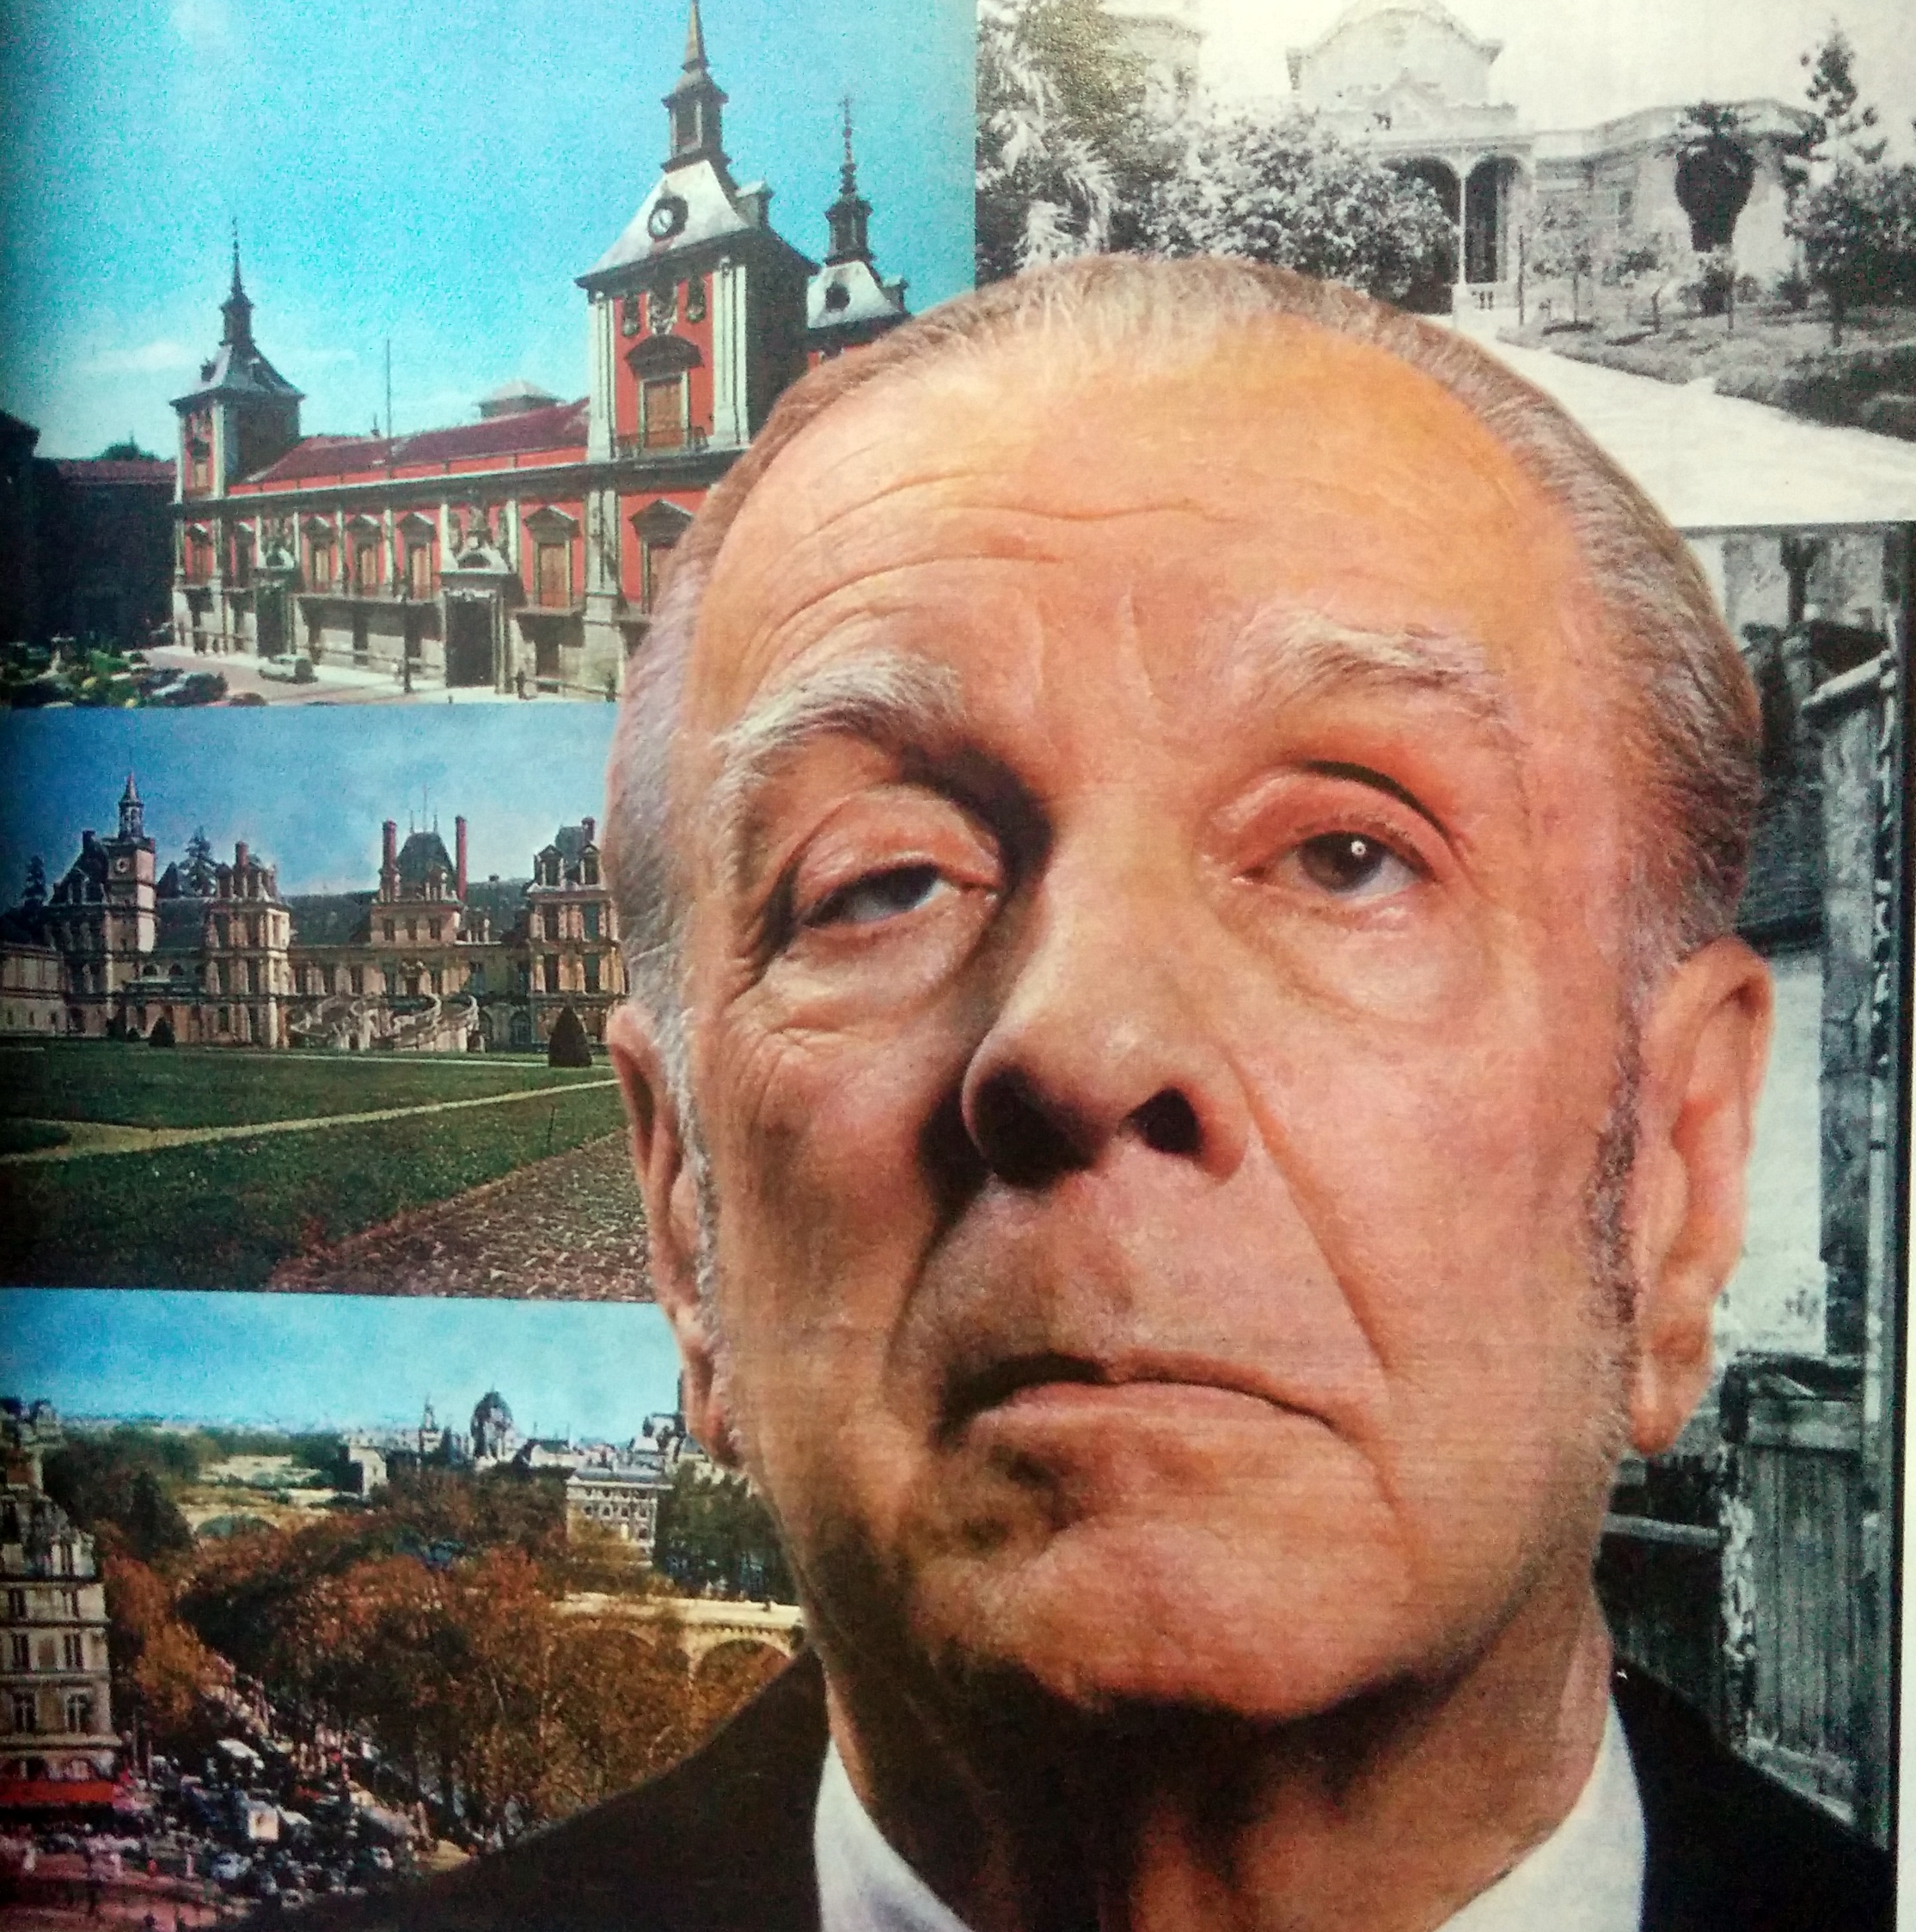 El insigne escritor y poeta argentino, Jorge Luis Borges, nacido en Buenos Aires, el 24 de agosto de 1899, y fallecido en Ginebra (Suiza), el 14 de junio de 1986.